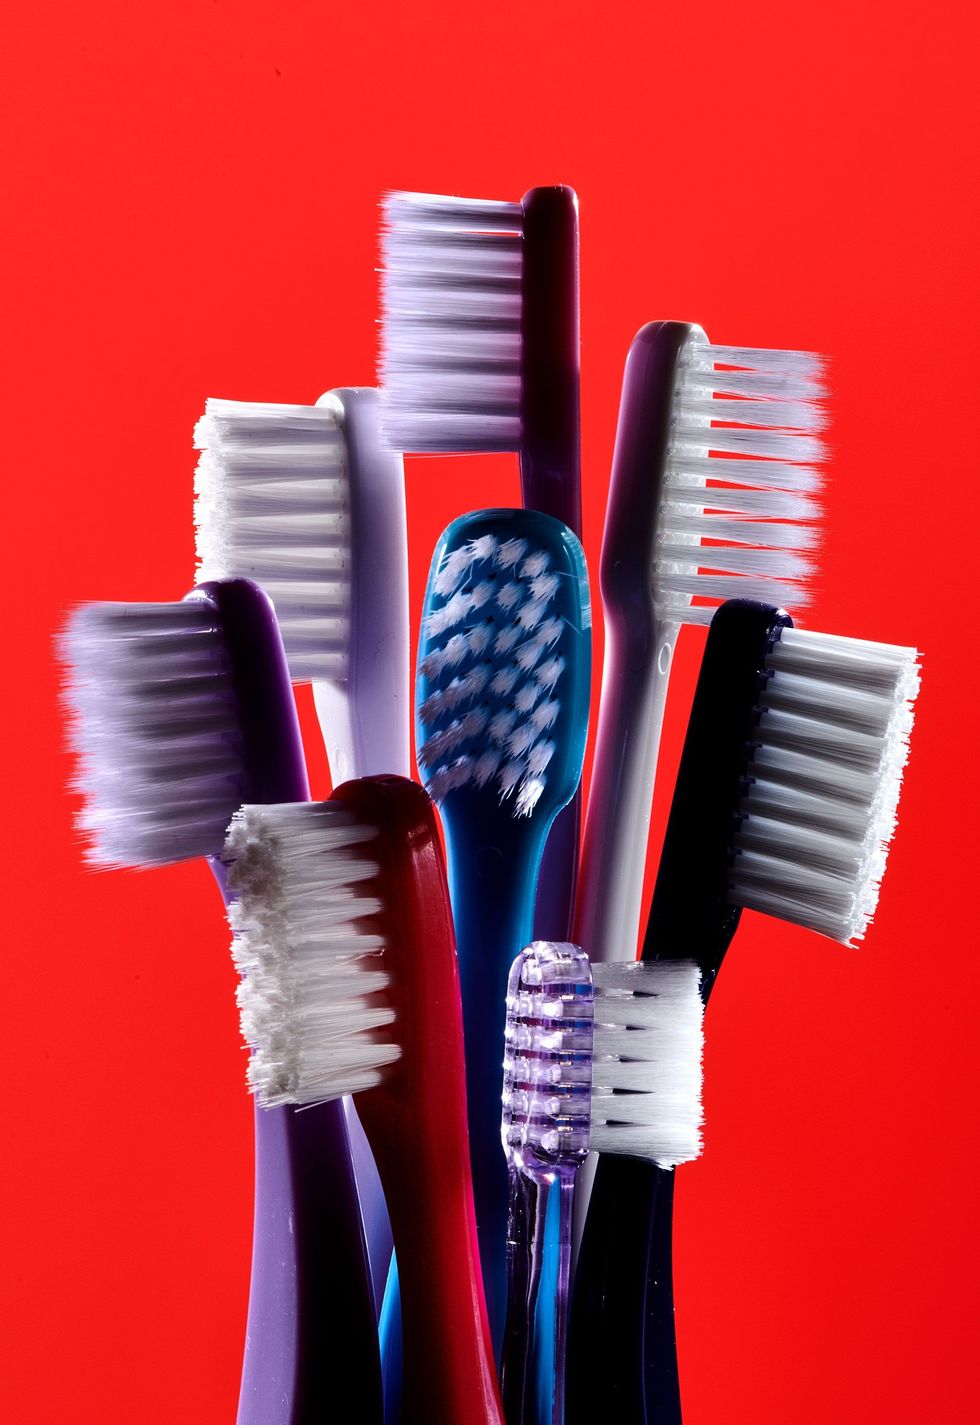 Veel tandenborstels zijn niet recyclebaar omdat de meeste zijn gemaakt van meerdere plasticsoorten die alleen met veel moeite van elkaar kunnen worden gescheiden